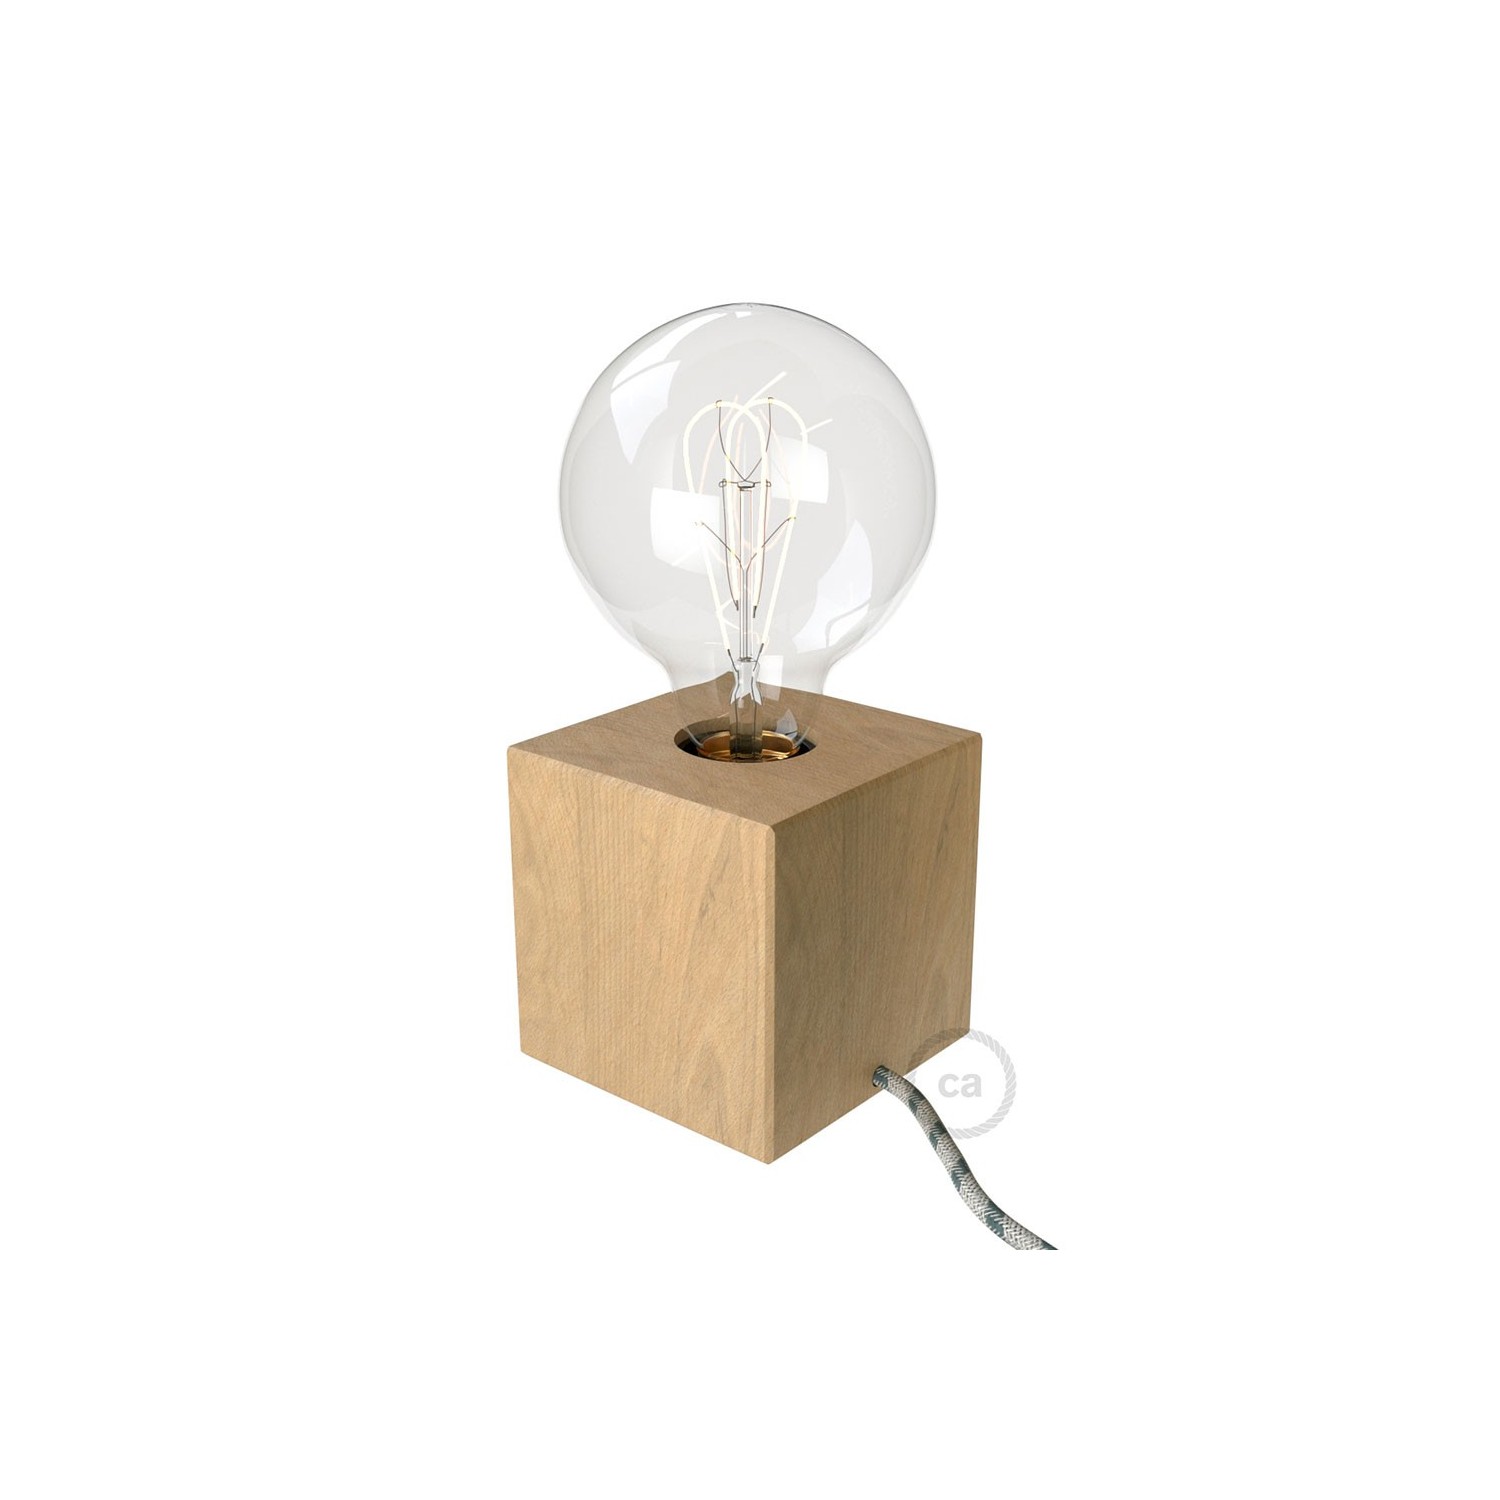 Posaluce Cubetto, la lámpara de mesa en madera natural, con cable textil, interruptor y clavija bipolar